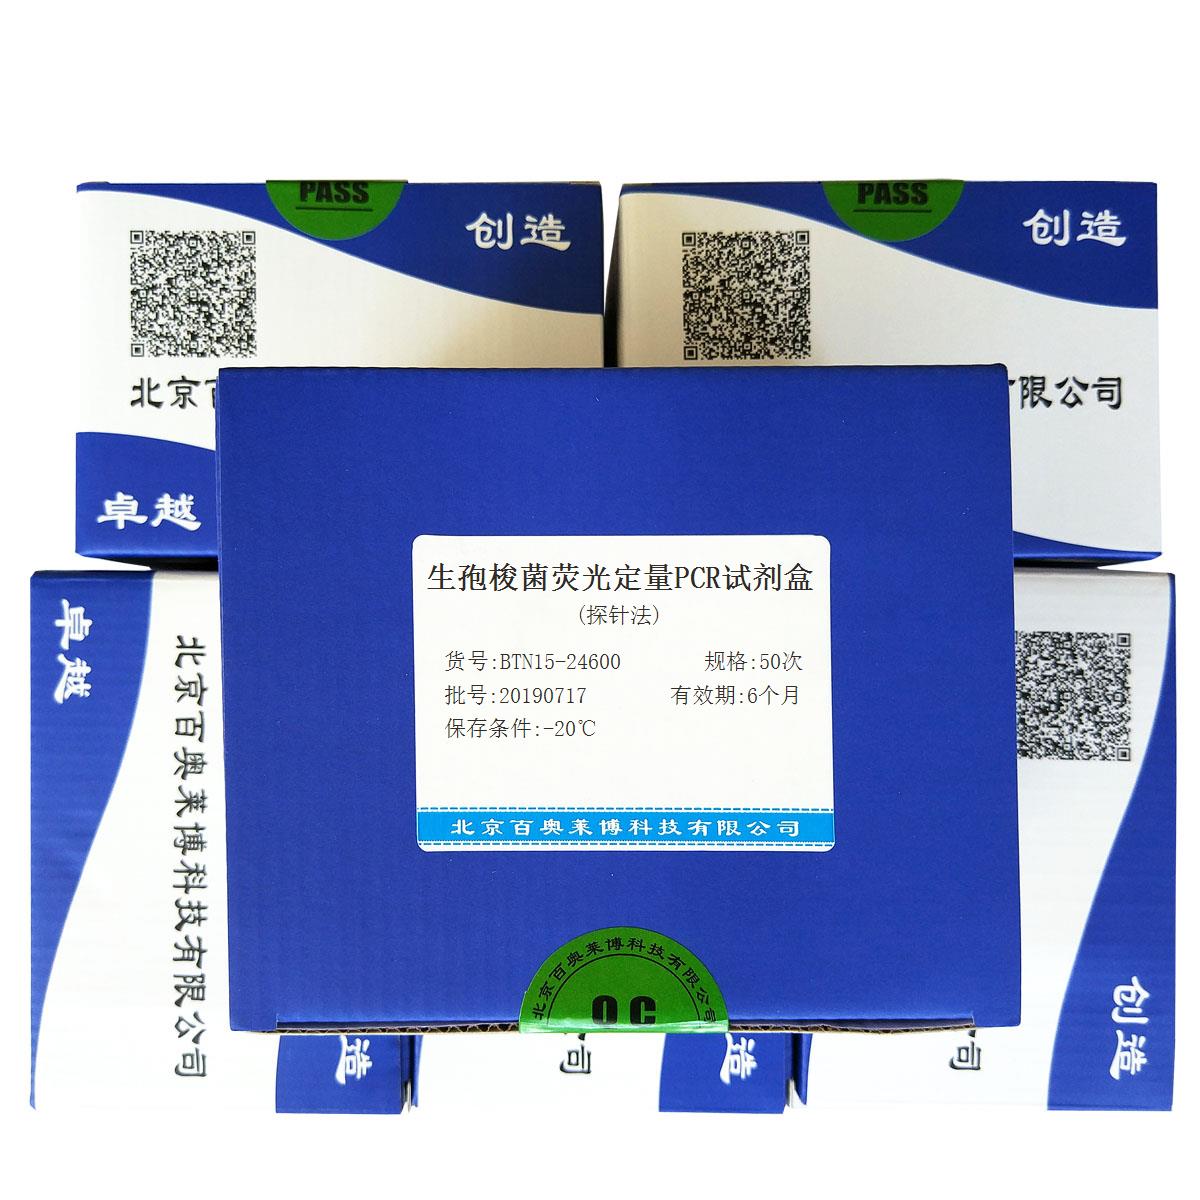 生孢梭菌荧光定量PCR试剂盒(探针法)北京现货